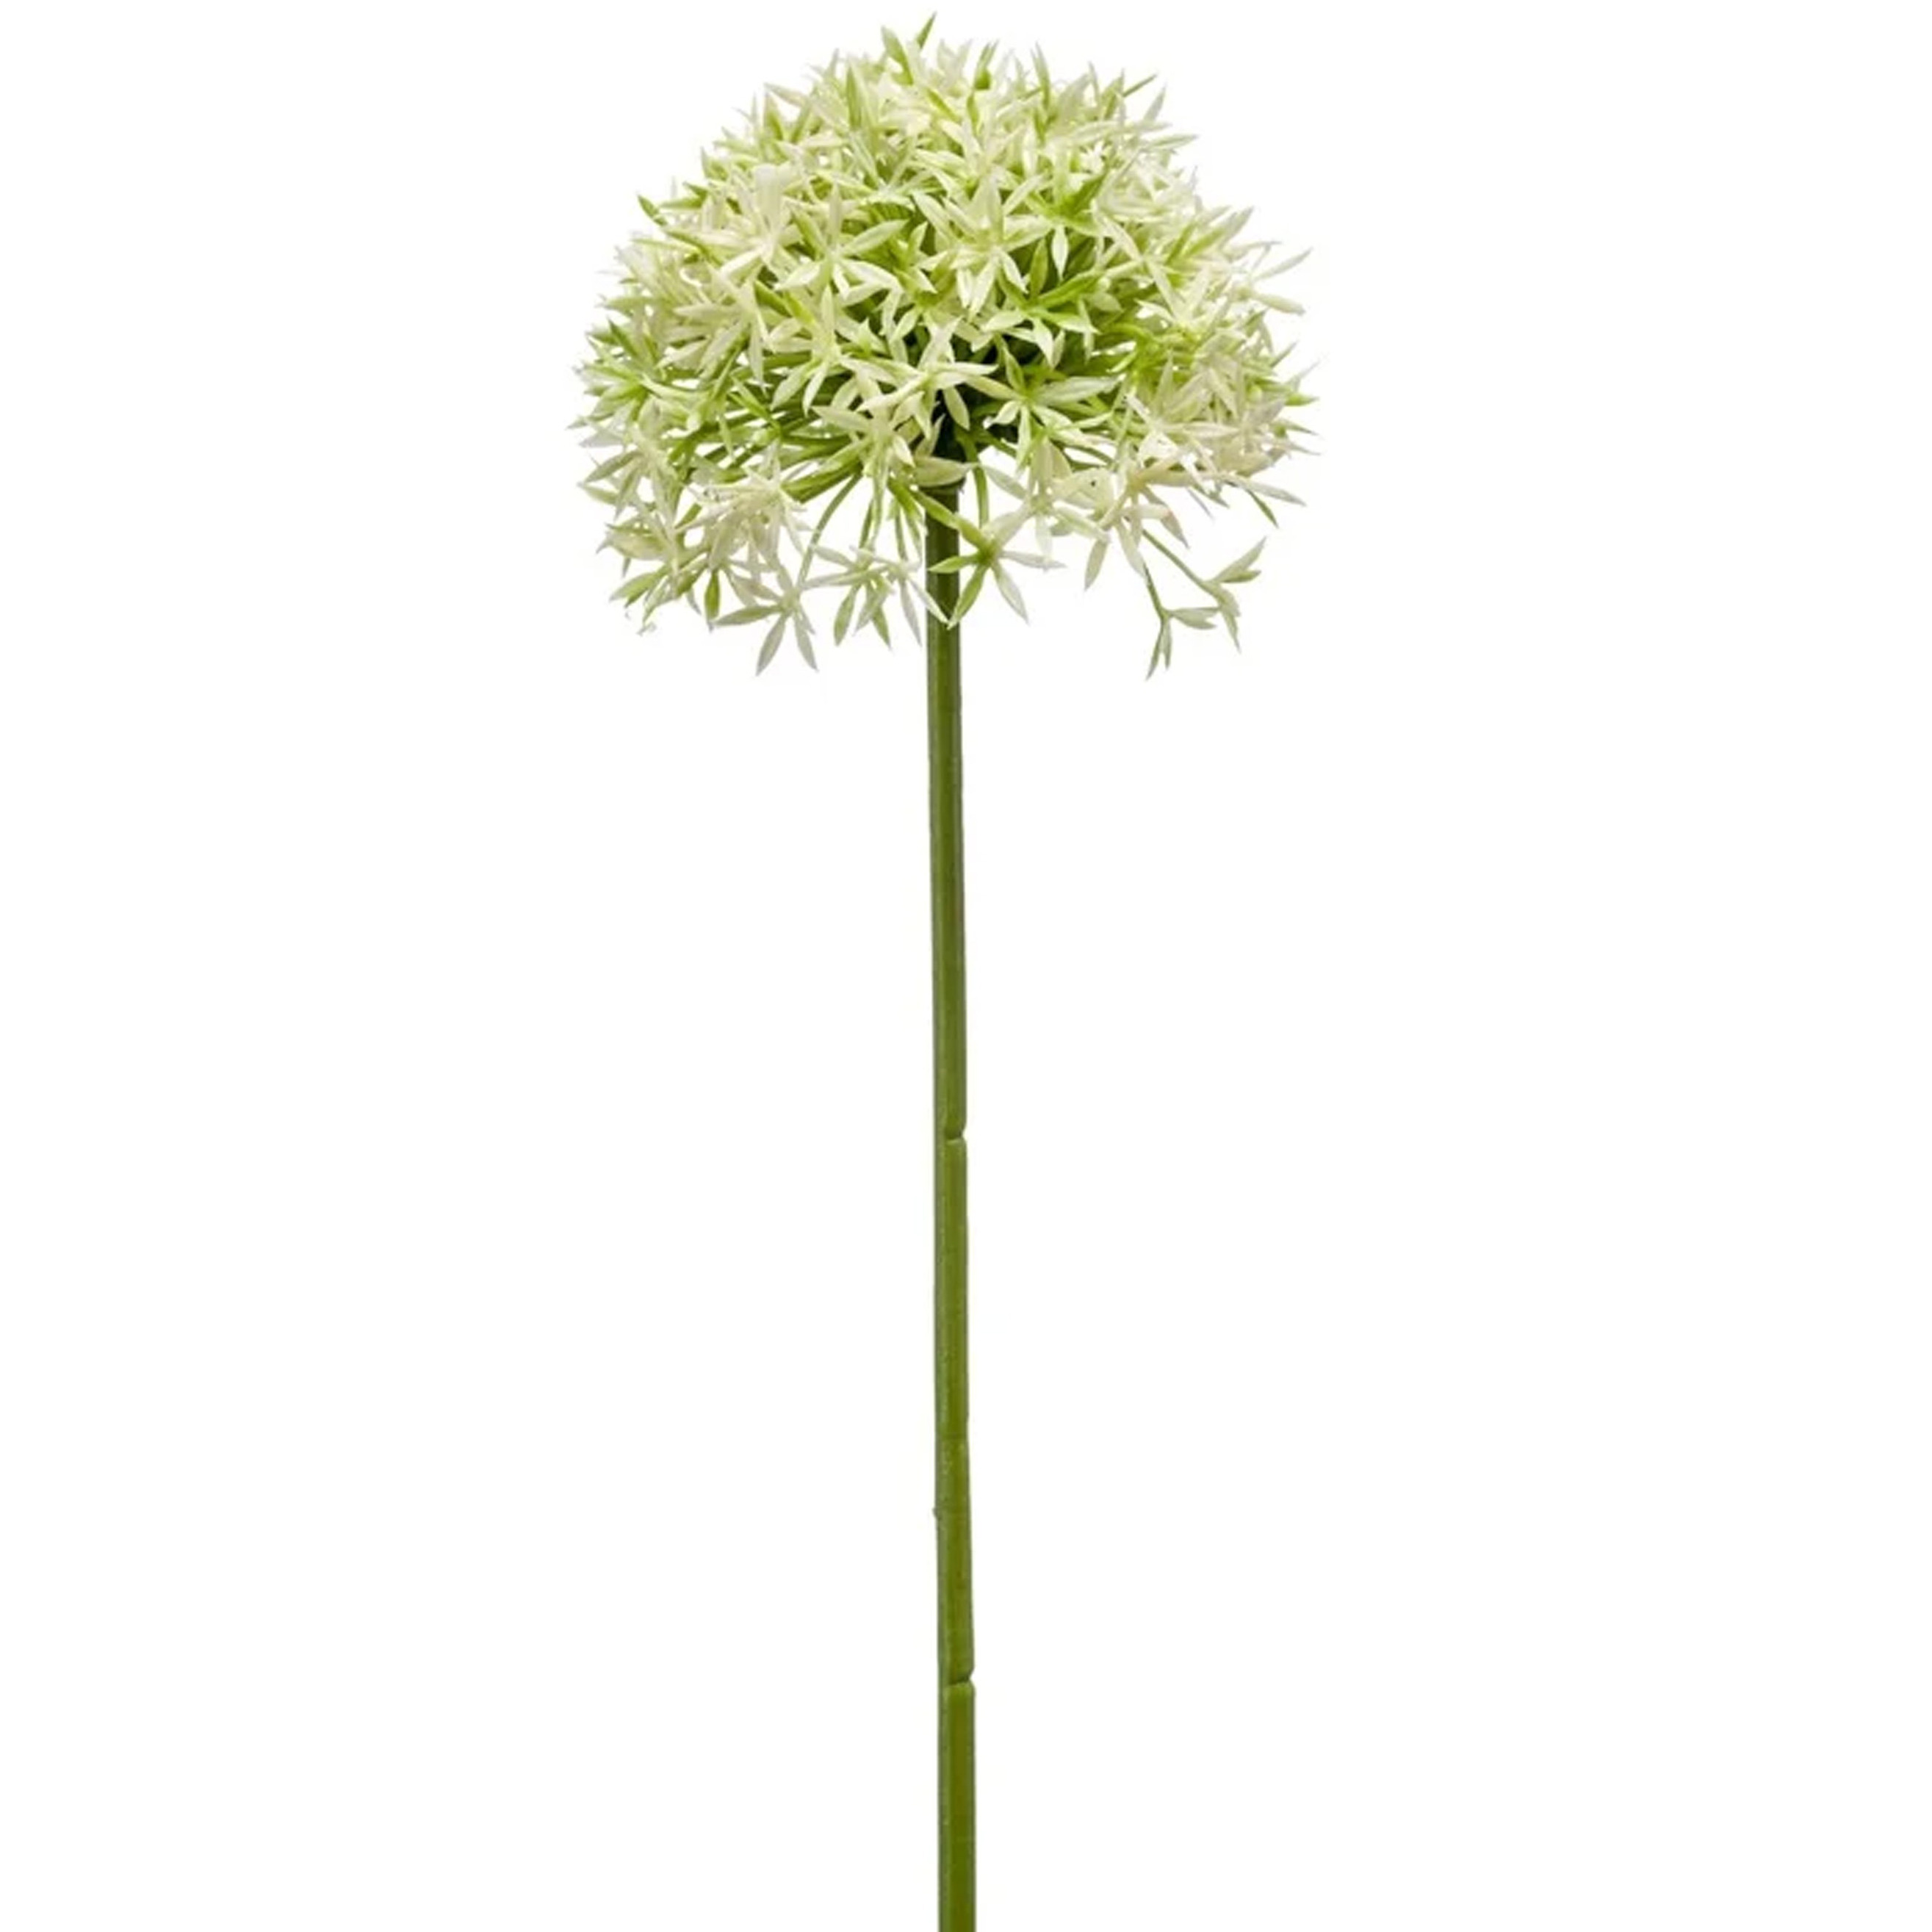 Allium-Sierui kunstbloem losse steel creme-groen 62 cm Natuurlijke uitstraling